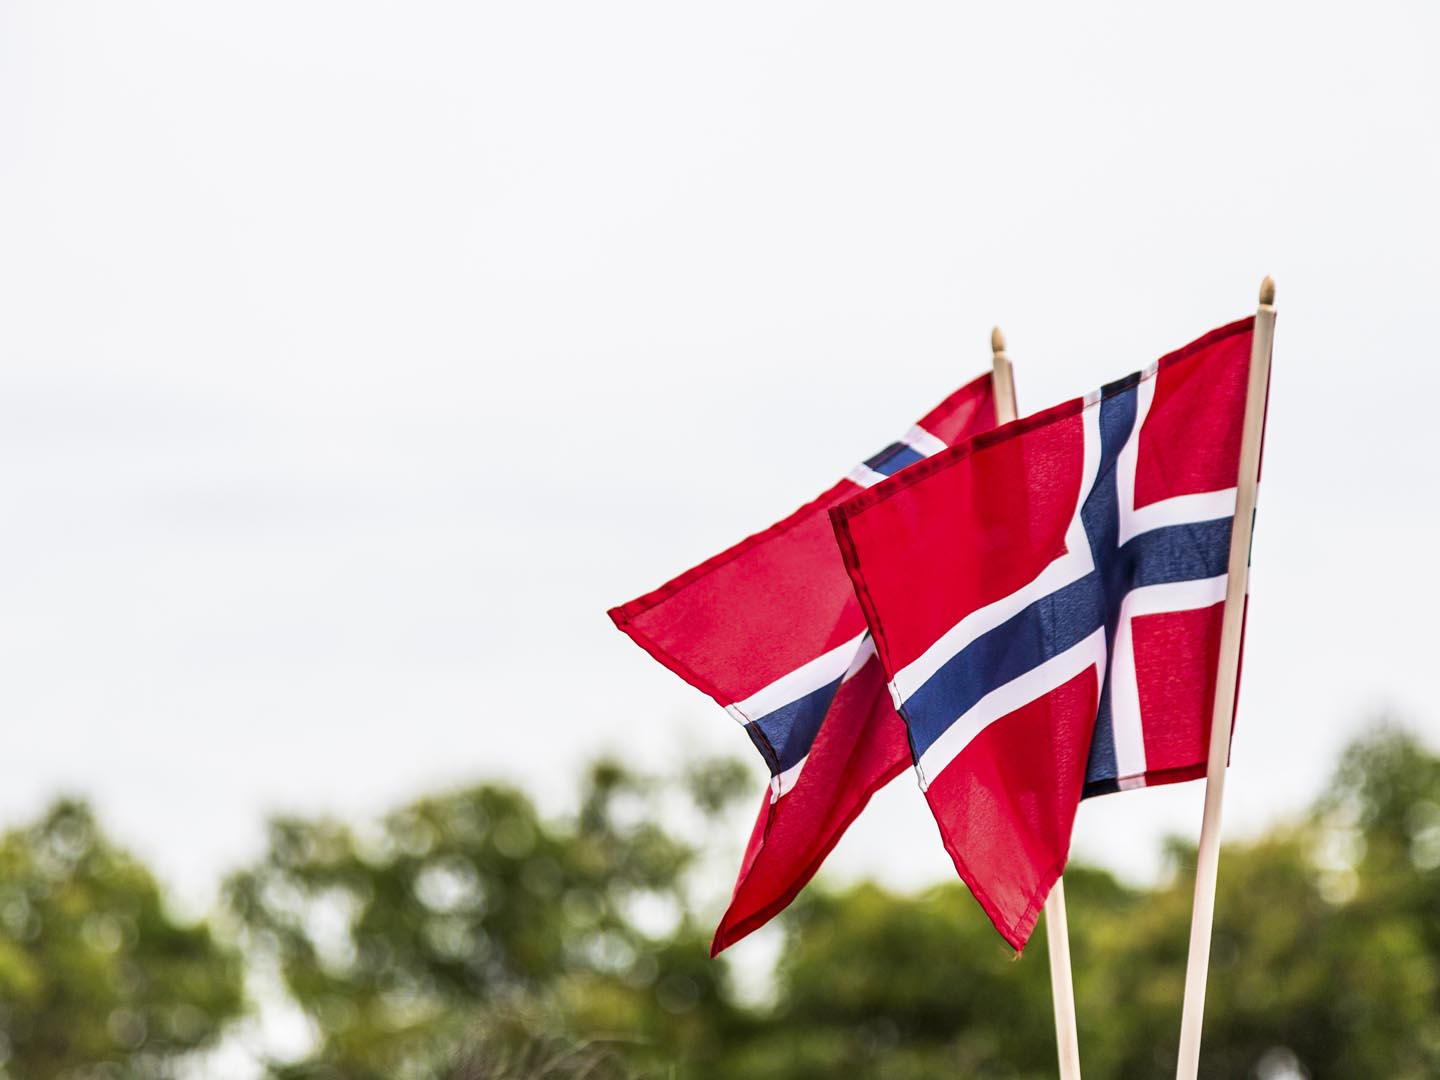 风中飘扬着两面挪威国旗。挪威的国旗是红色的，靛蓝色的斯堪的纳维亚十字用白色镶边，一直延伸到国旗的边缘;十字架的垂直部分被移到提升的一边，以丹麦国旗Dannebrog的风格。